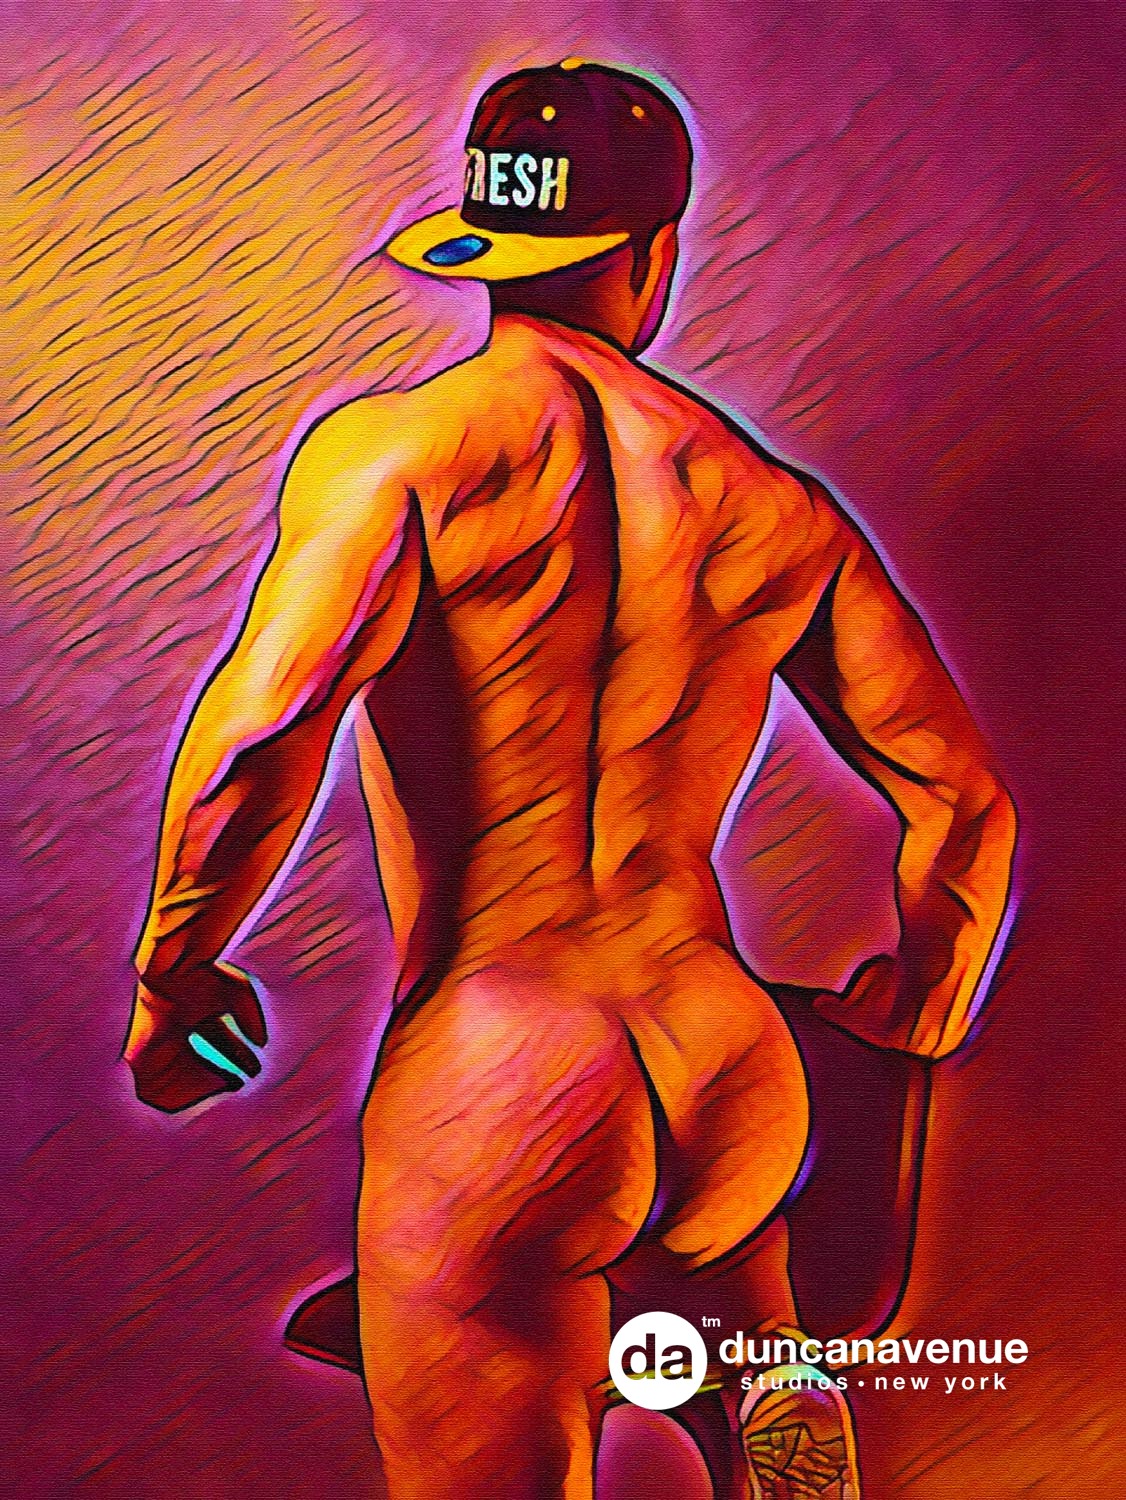 Erotic Gay Art / NFT Crypto Art / Digital Paintings / Homoerotic Art by Maxwell Alexander